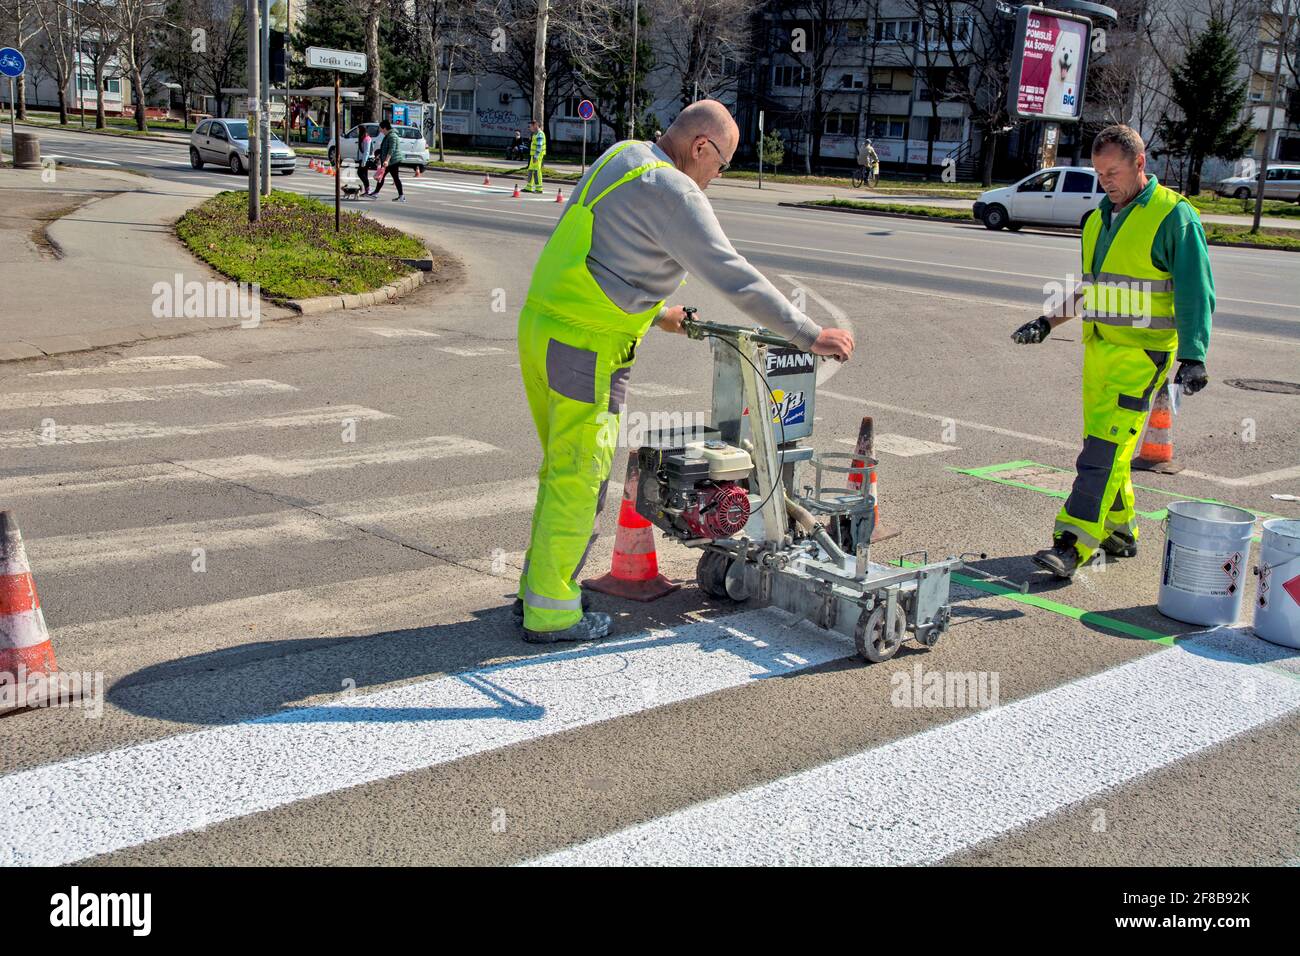 Zrenjanin, Serbie le 26 mars 2021. Les travailleurs d'une entreprise qui peint des passages piétons, communément appelés « zèbres », marquent et peignent sur l'asphalte. Banque D'Images